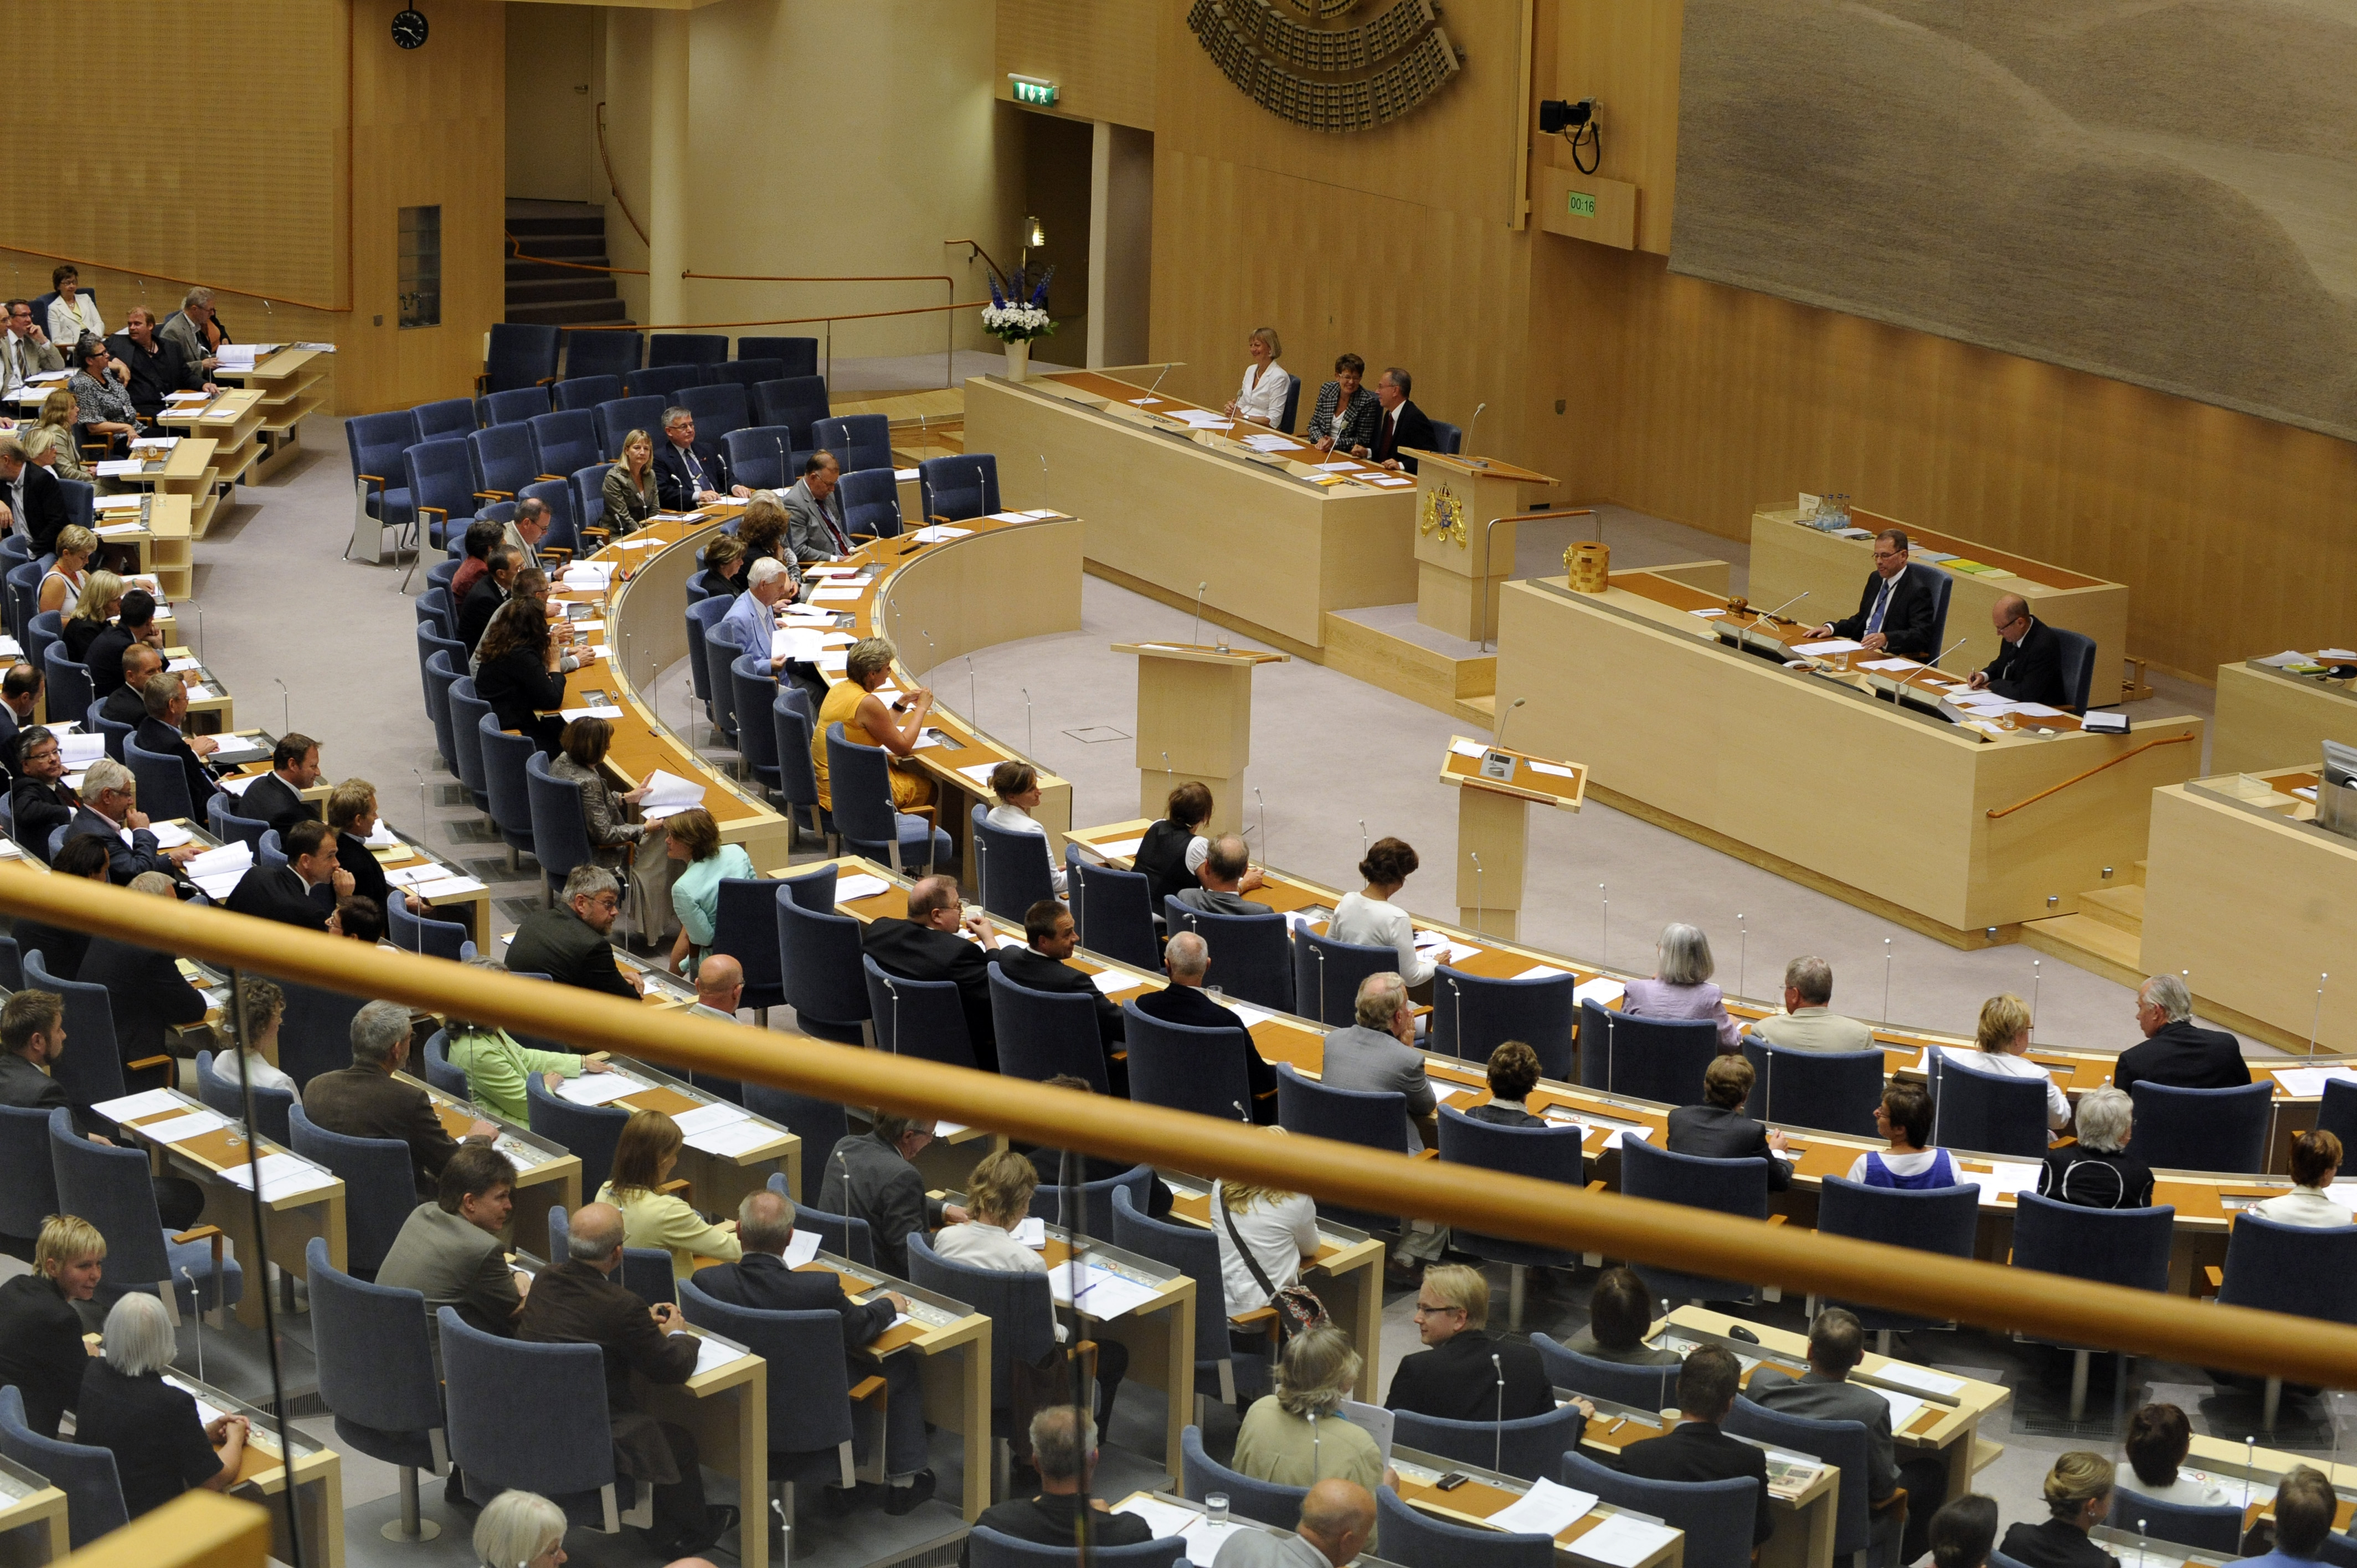 Kristdemokraterna, Riksdagsvalet 2010, Göran Hägglund, Fredrik Reinfeldt, Alliansen, Moderaterna, Politisk vilde, Göran Thingwall